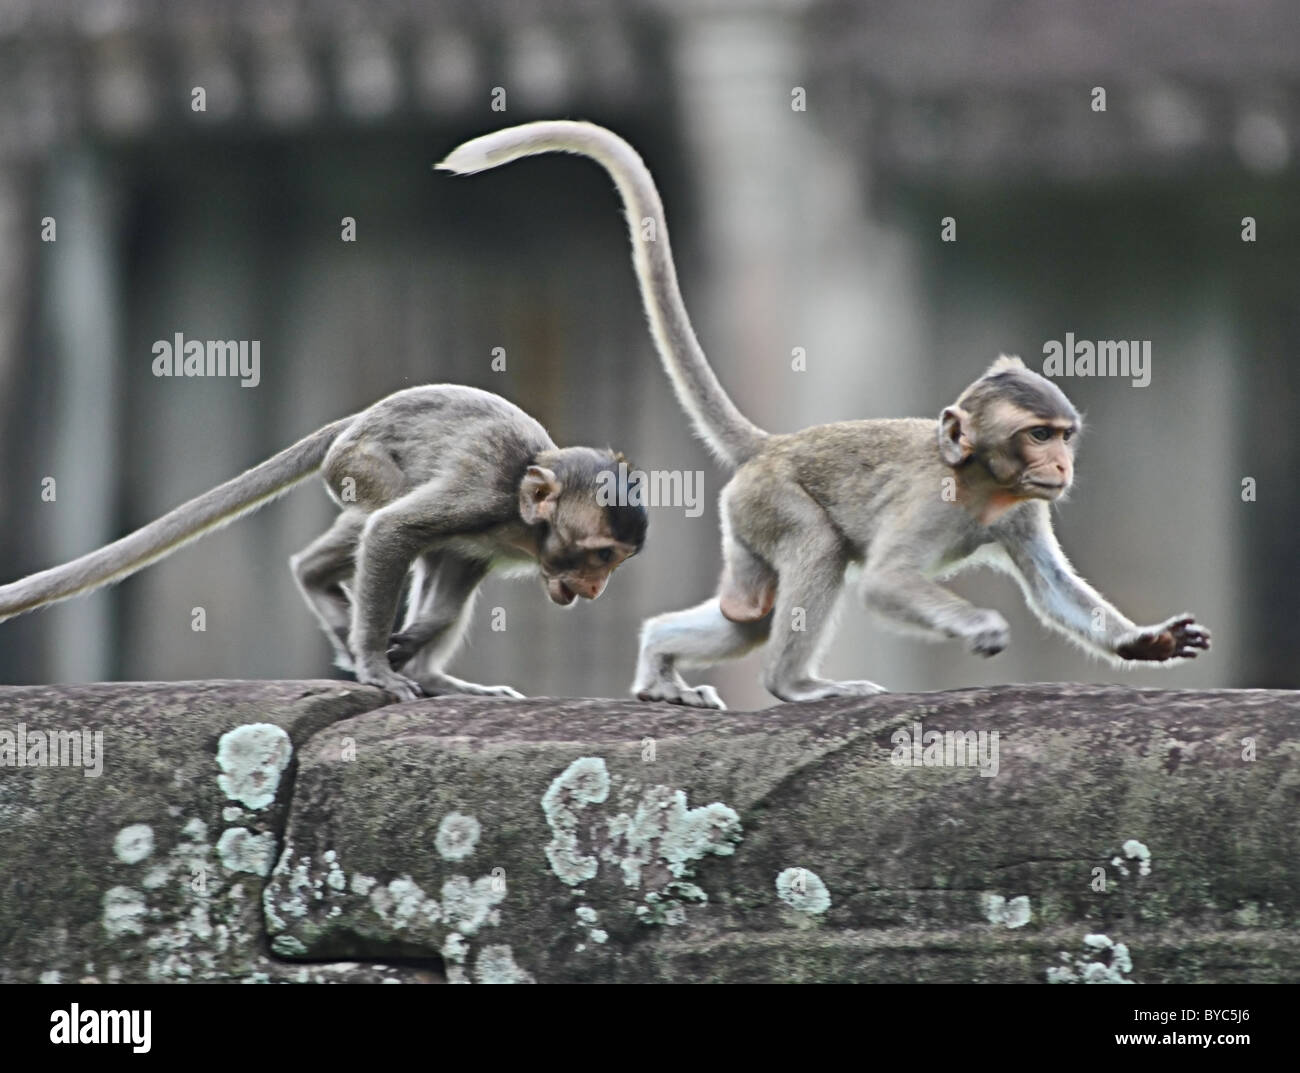 Les jeunes macaques rhésus chassant l'autre à Angkor Wat, au Cambodge Banque D'Images